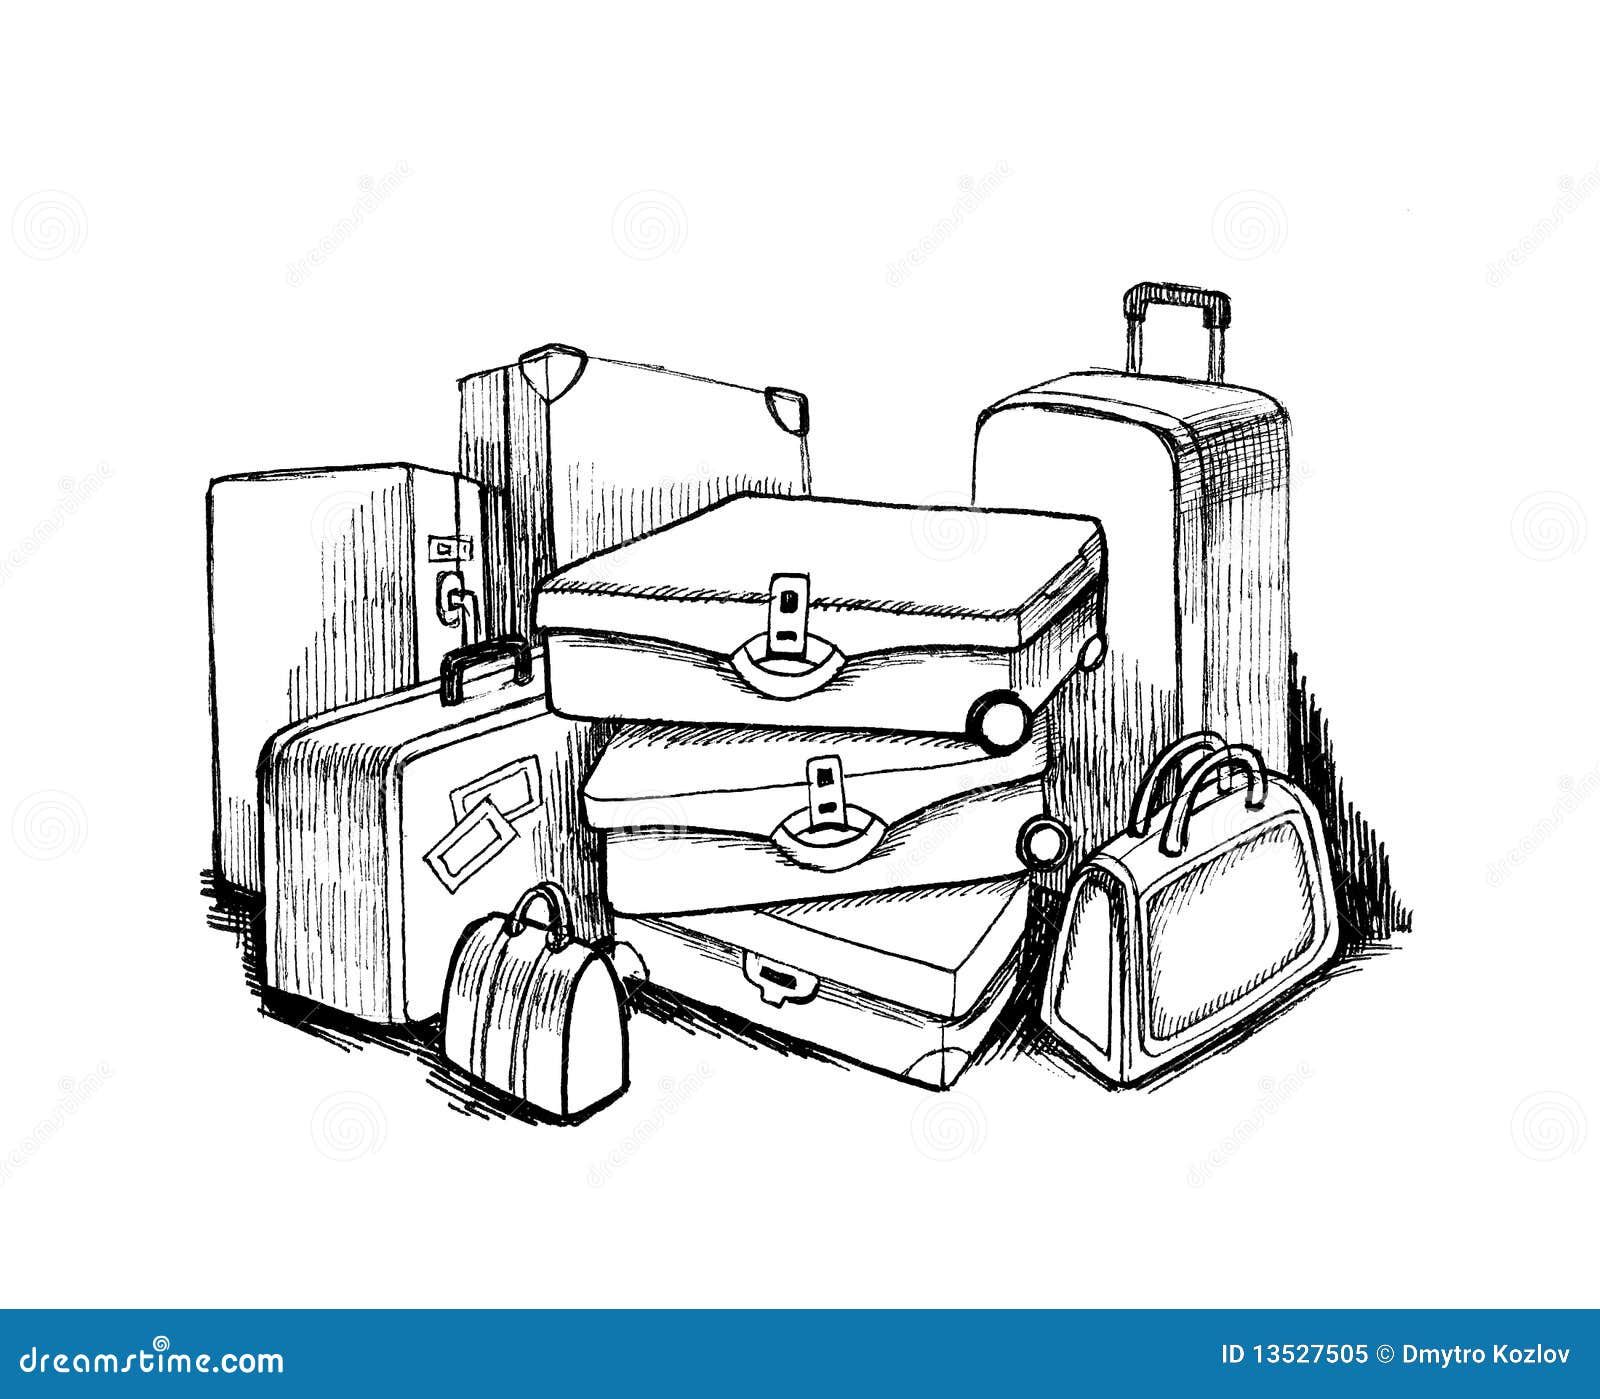 Luggage stock illustration. Image of journey, handle - 13527505